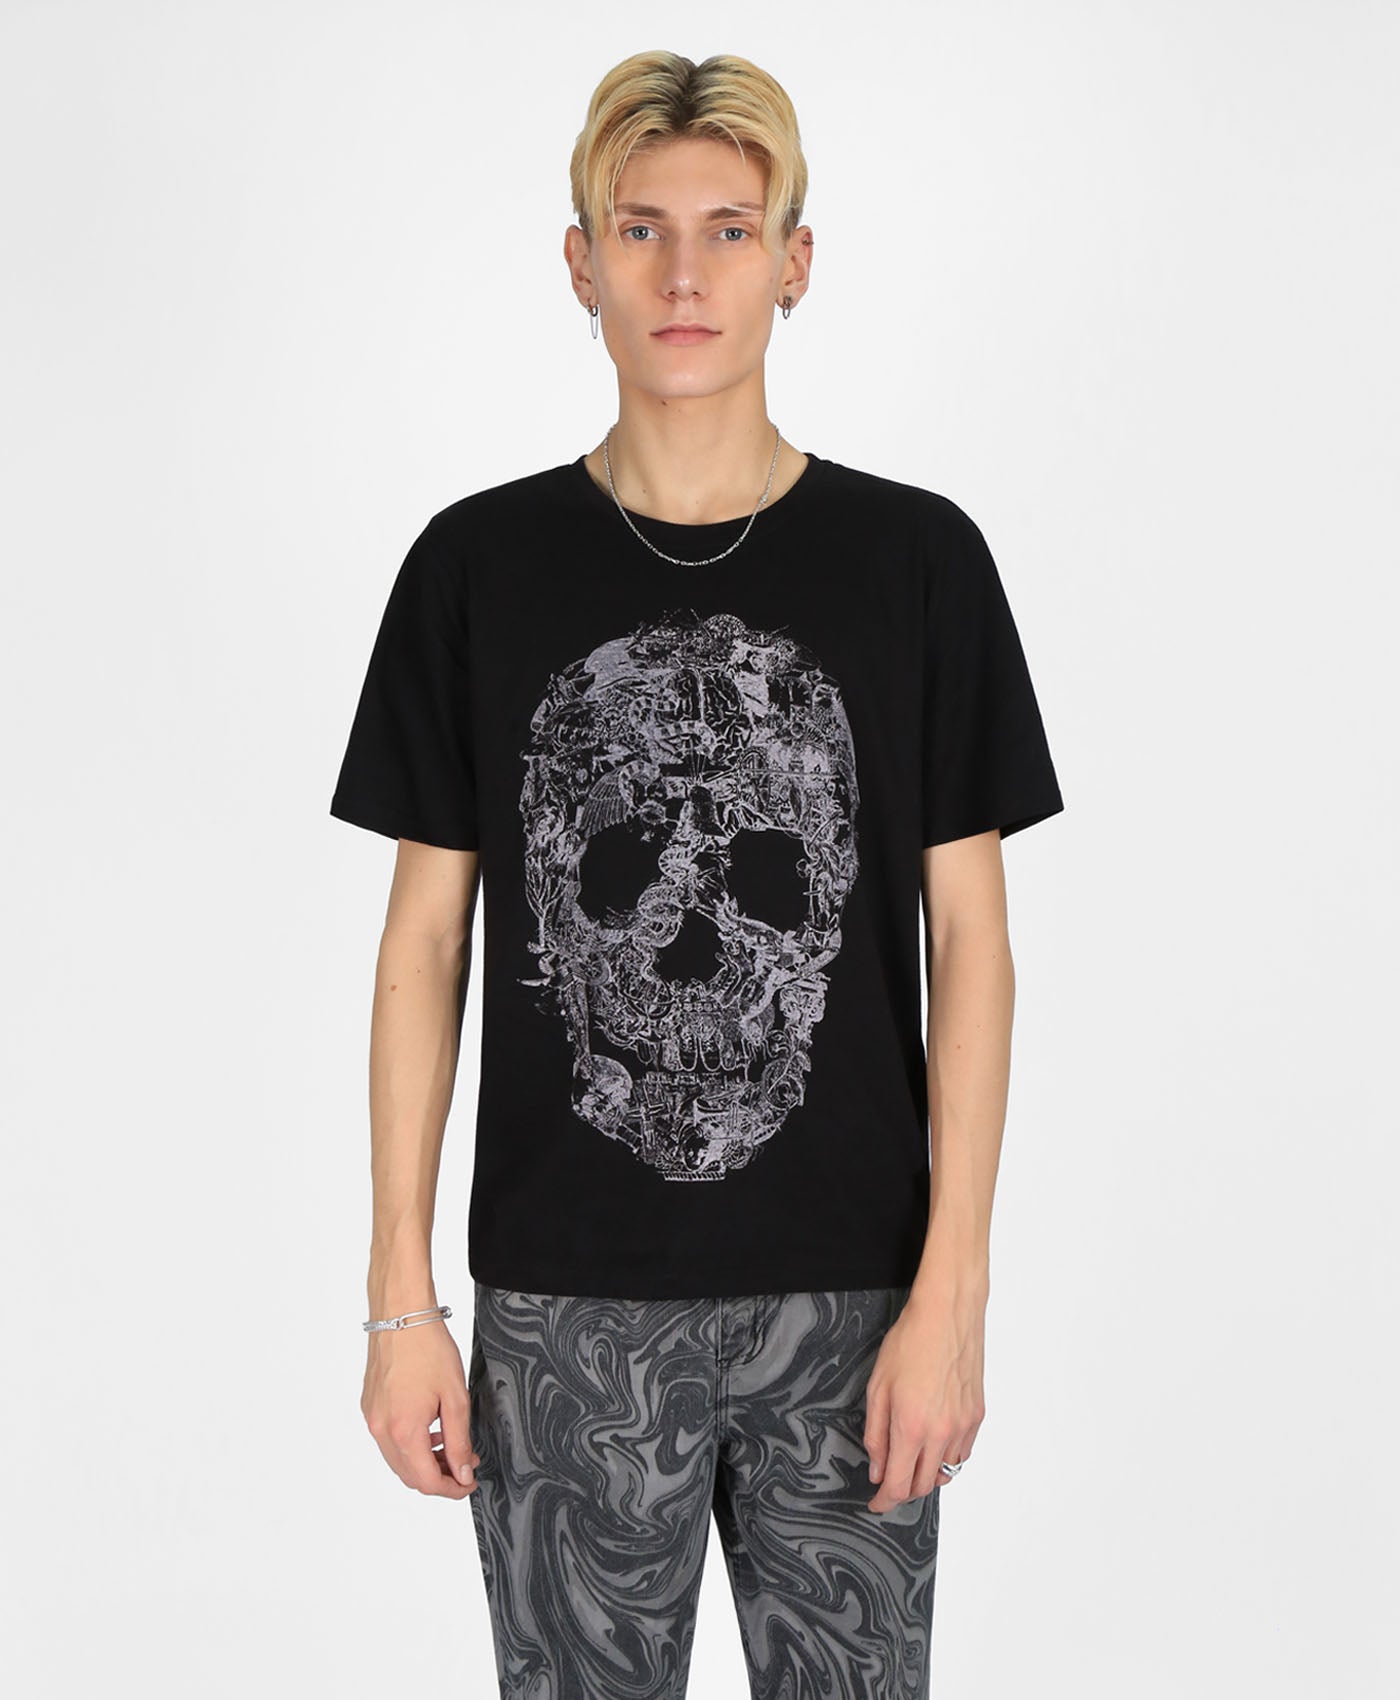 Junk Skull T-Shirt